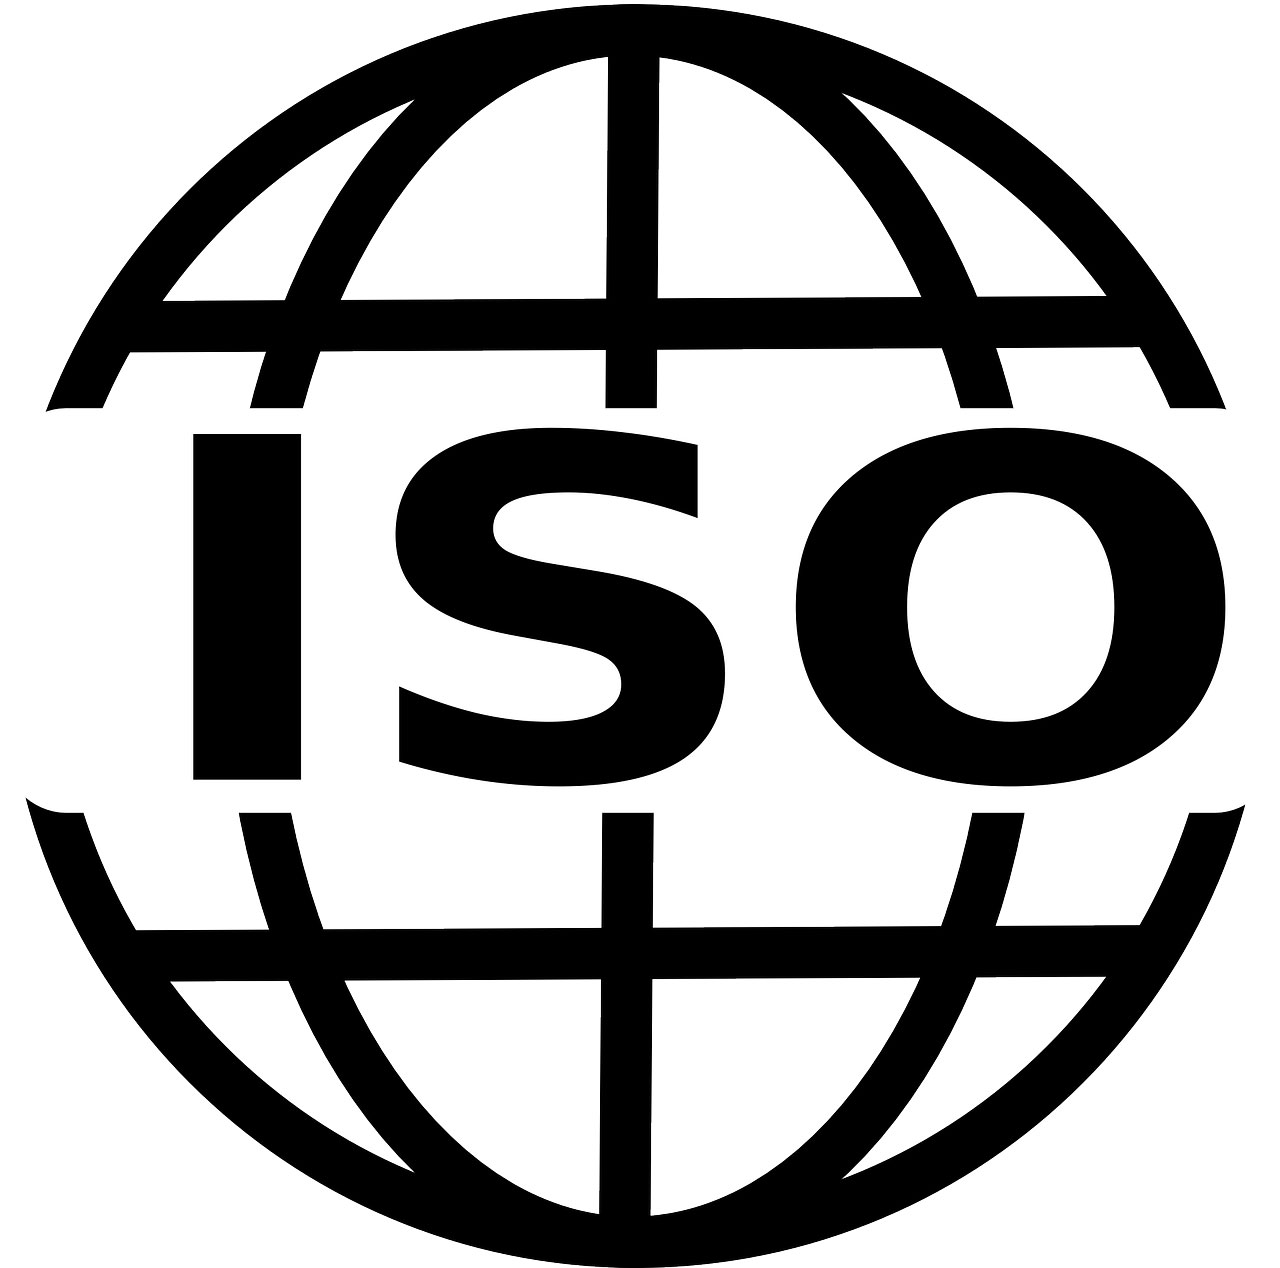 Norme ISO - Le scadenze per gli Adeguamenti